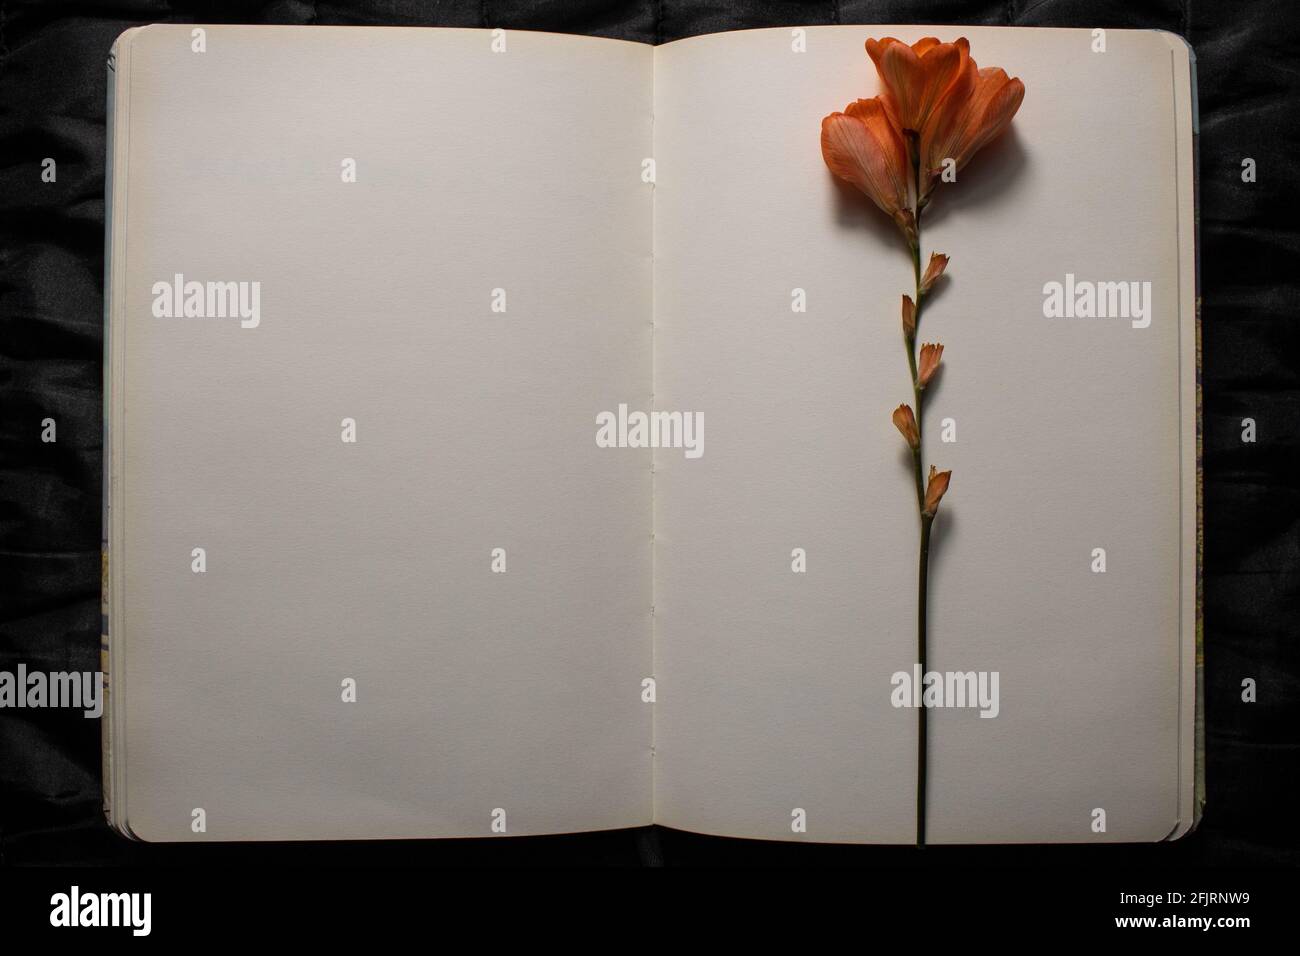 Draufsicht auf ein offenes Buch mit orangefarbener Freesia-Blume, die auf leeren leeren Seiten auf einem schwarzen strukturierten Hintergrund liegt. Leerer Raum für Text Stockfoto